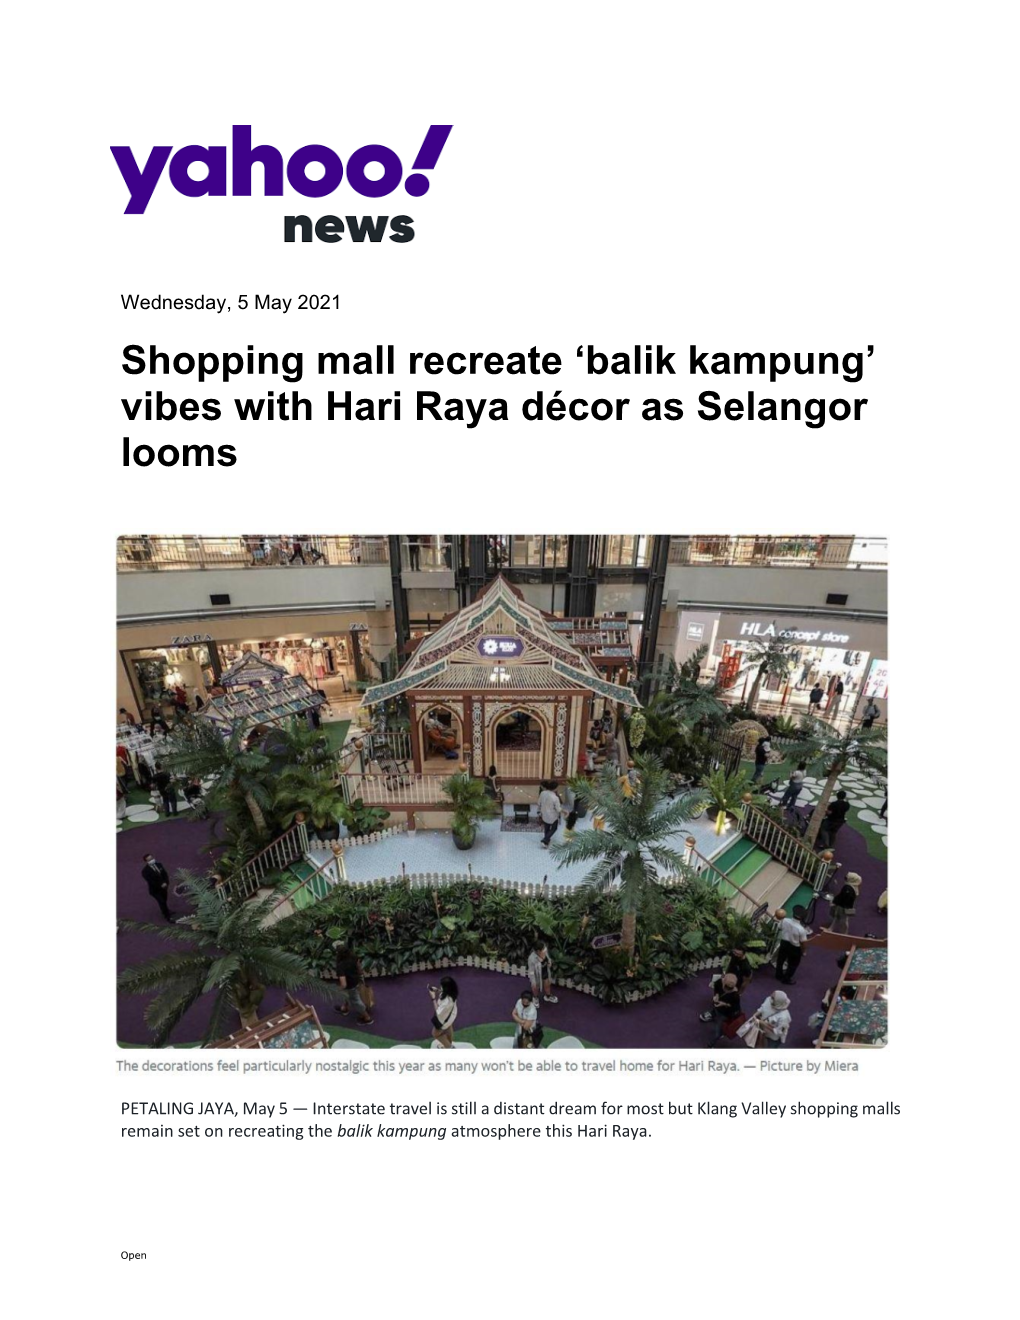 Shopping Mall Recreate 'Balik Kampung' Vibes with Hari Raya